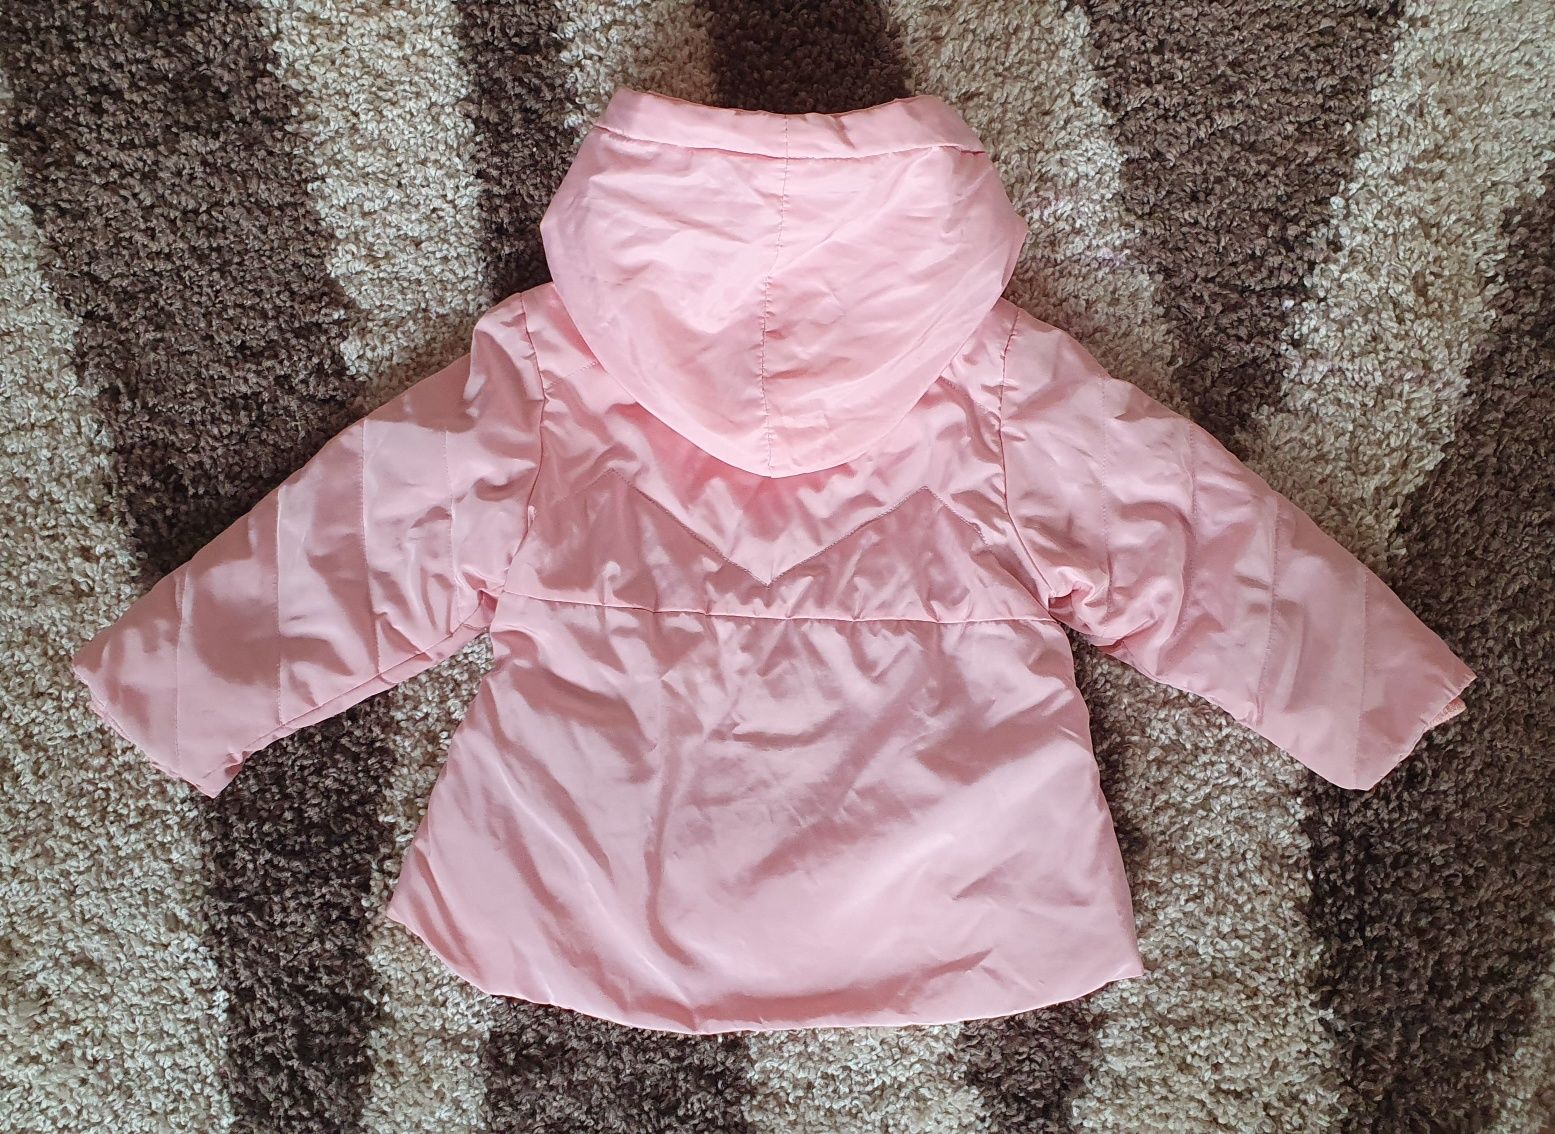 Ніжно-рожева куртка на весну, на вік 1-1,5 р.
80-86 см